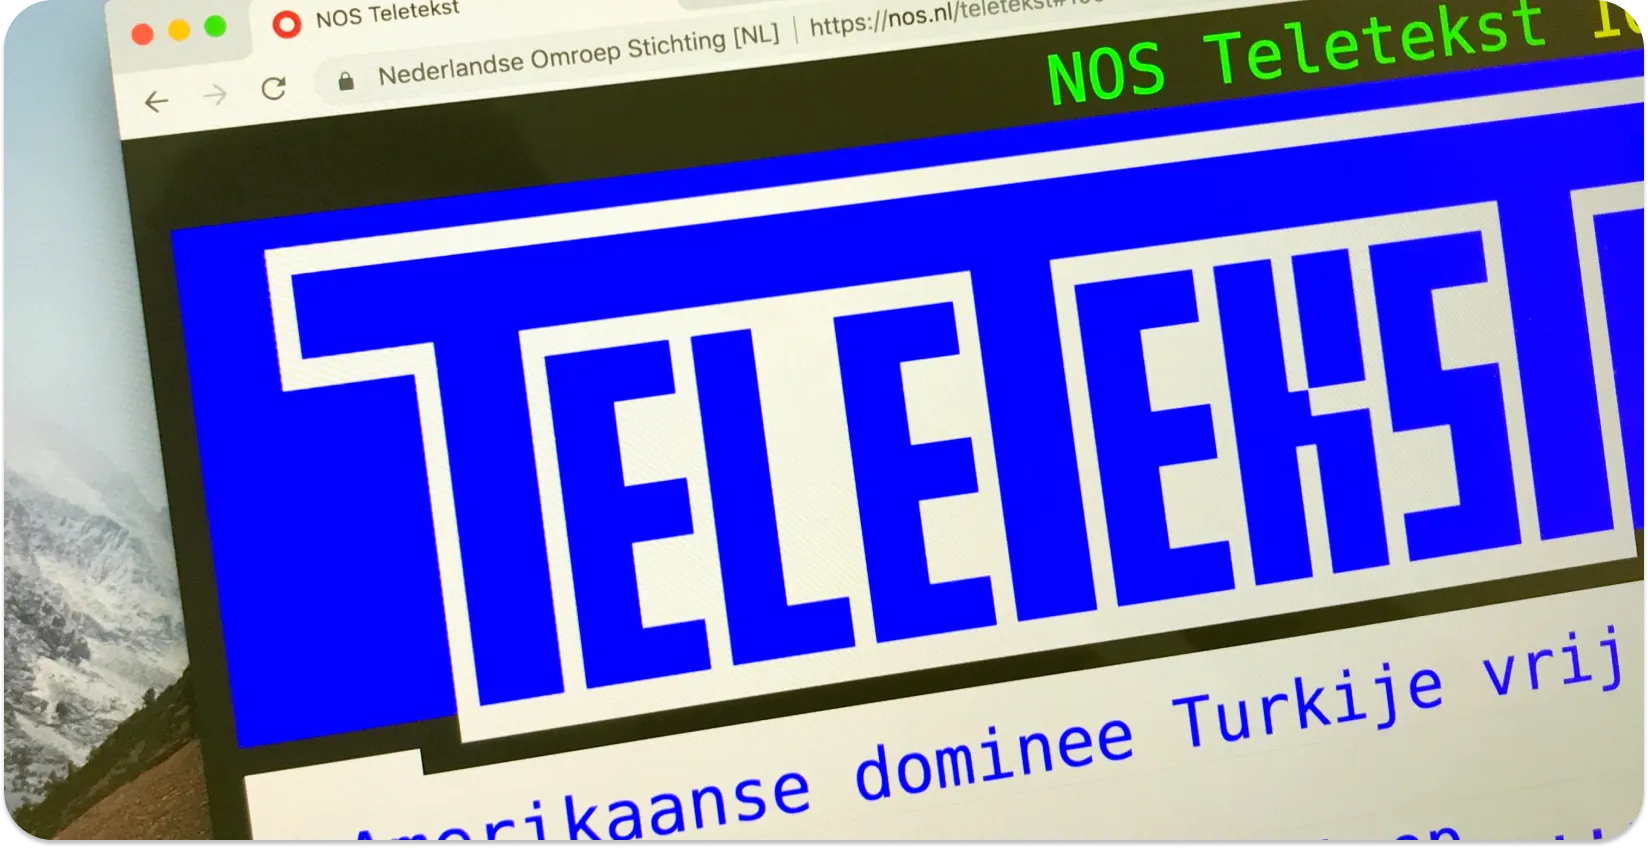 Uma tela de computador exibindo legendas de teletexto com manchetes de notícias, exemplificando o formato de legendas de teletexto.